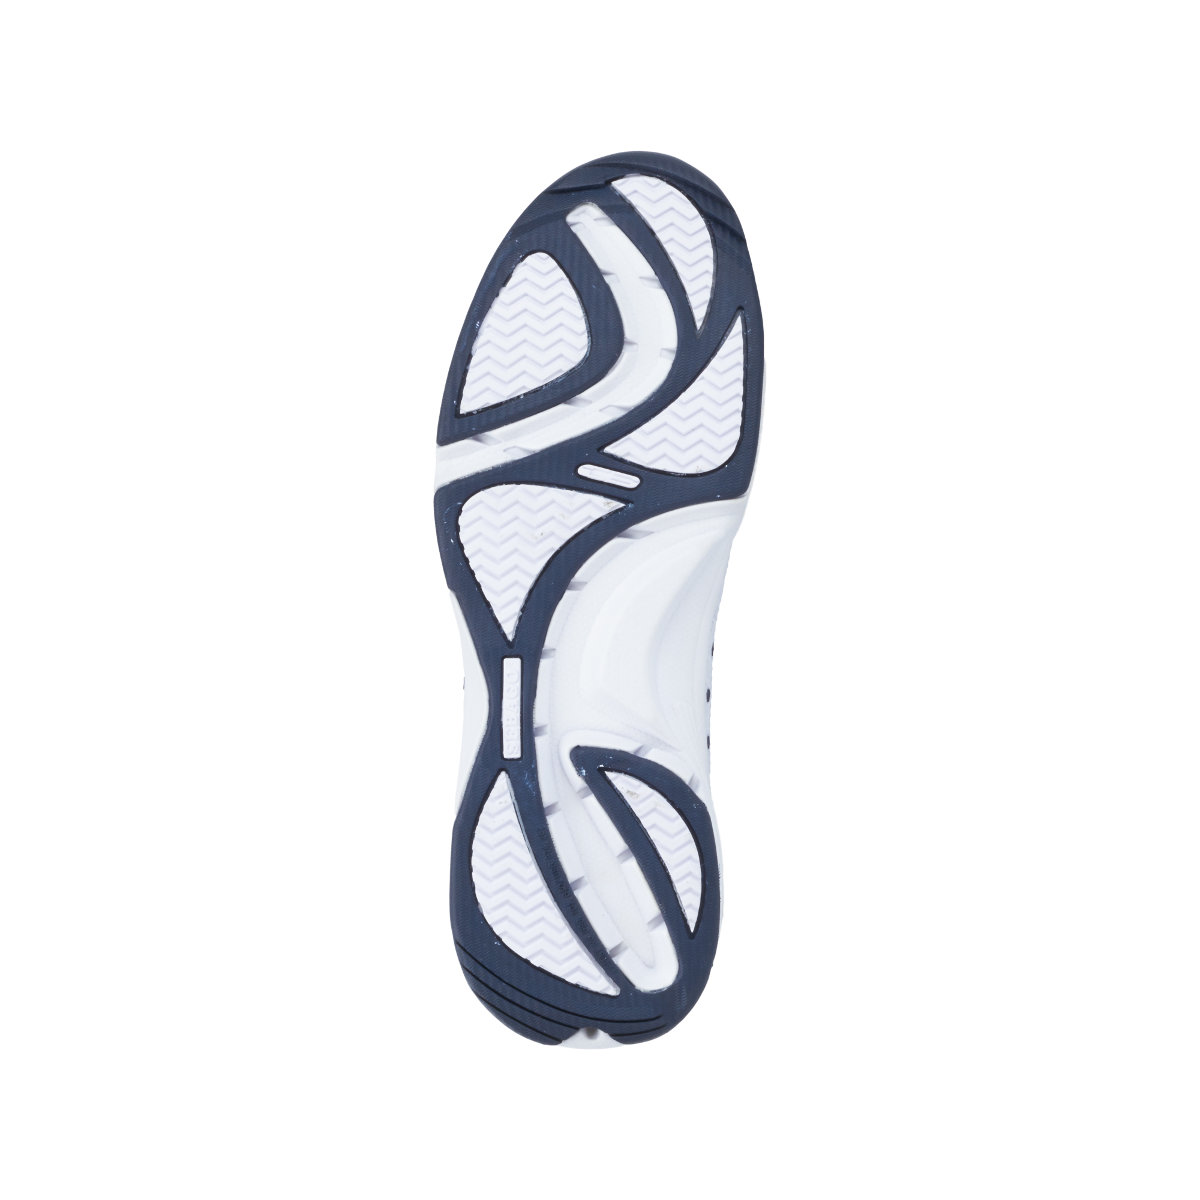 Sebago Cyphon Sea Sport chaussures à voile femme blanche, taille EU 40 (US 9)